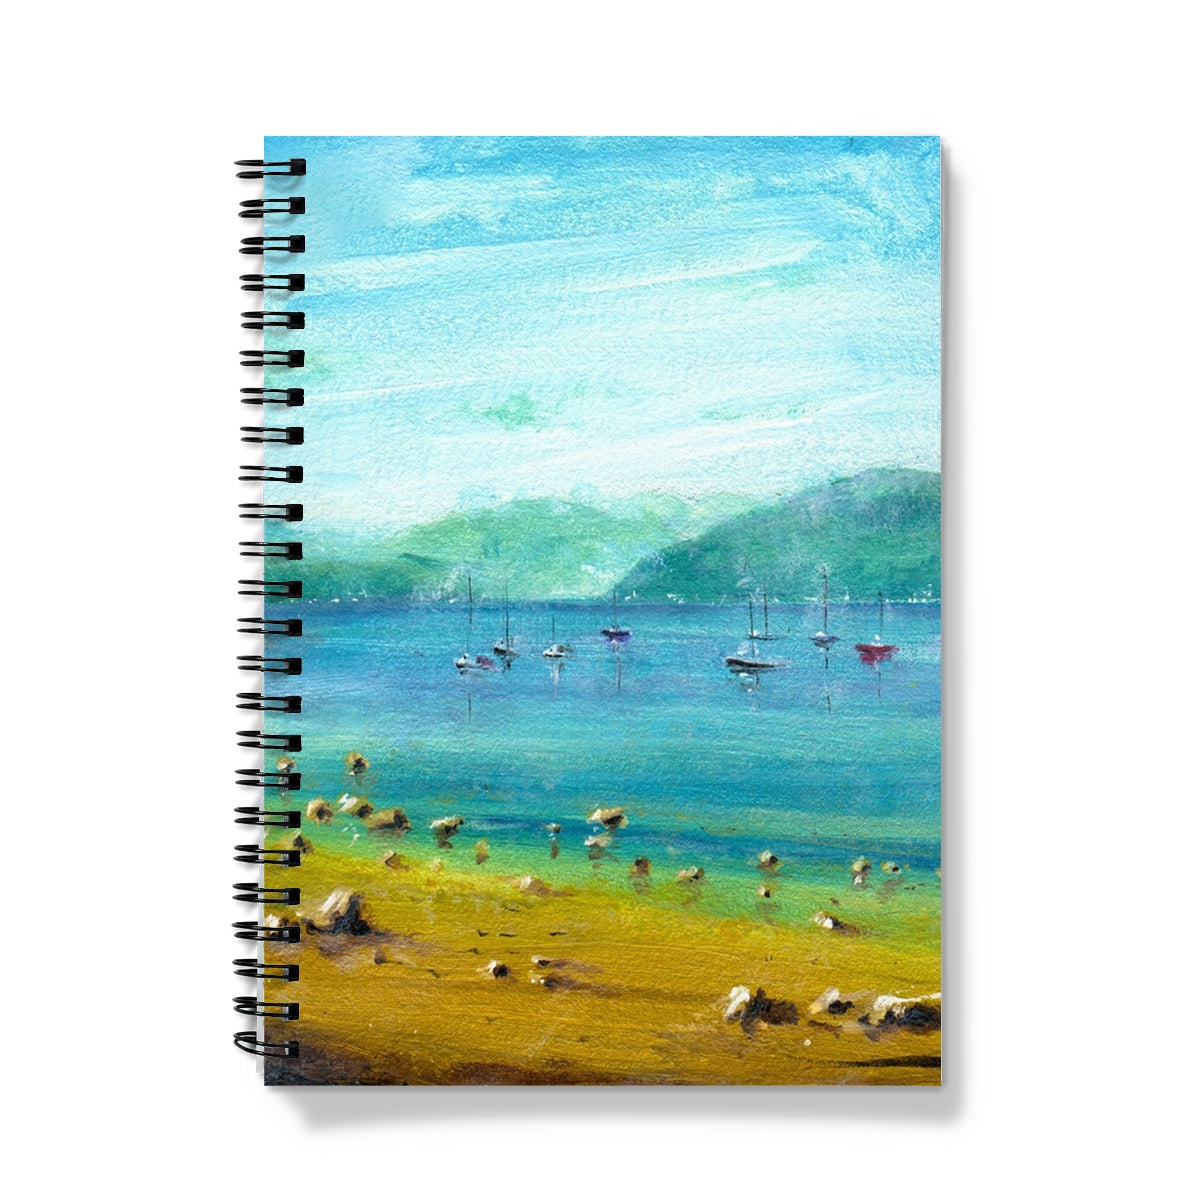 A Clyde Summer Day Art Gifts Notebook